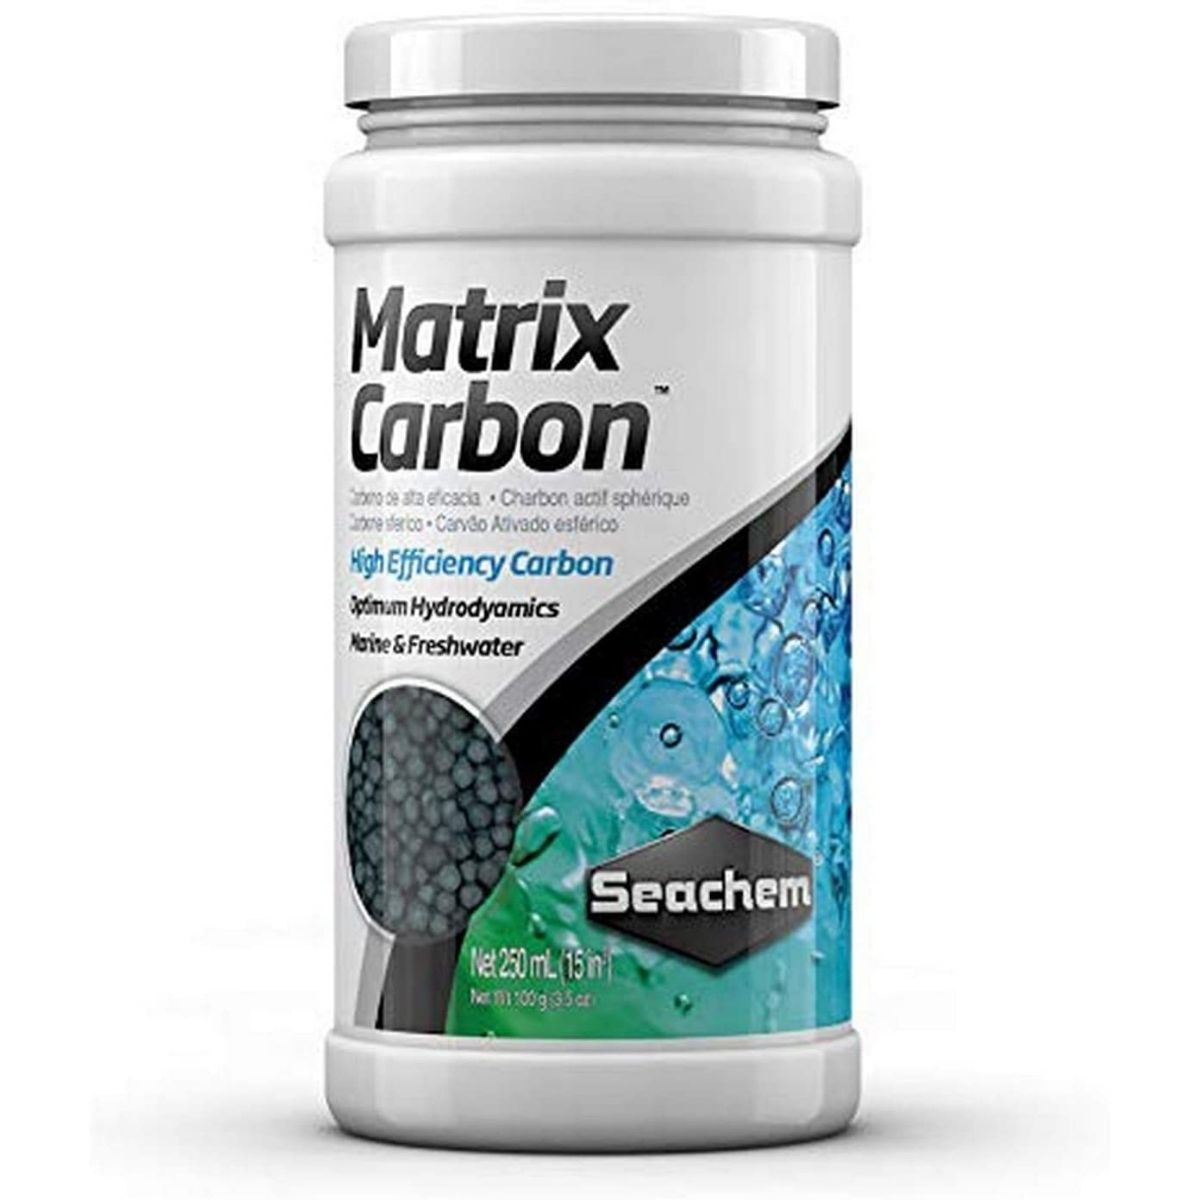 seachem matrix carbon review